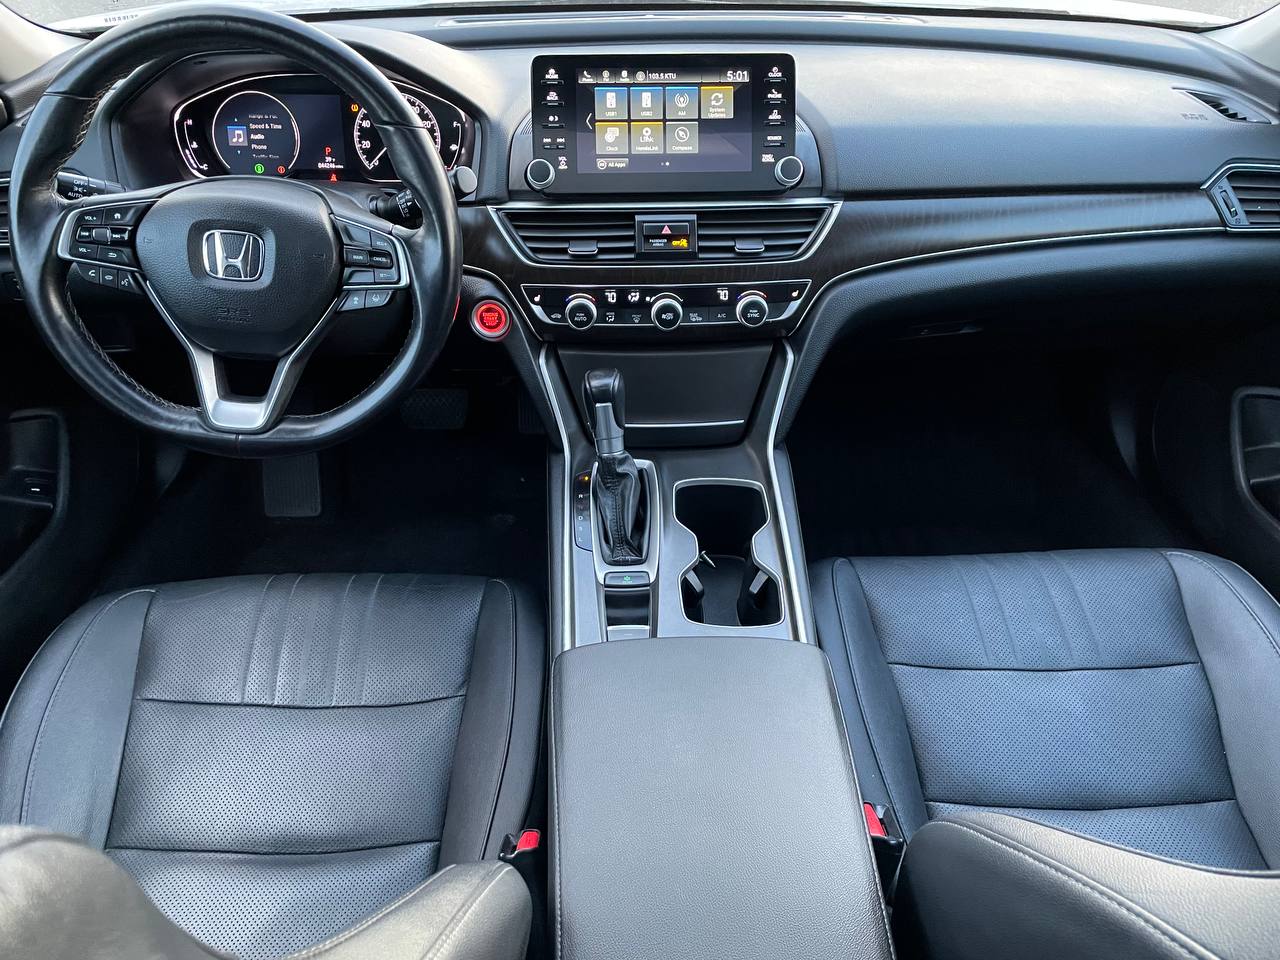 Used - Honda Accord EX-L Sedan for sale in Staten Island NY